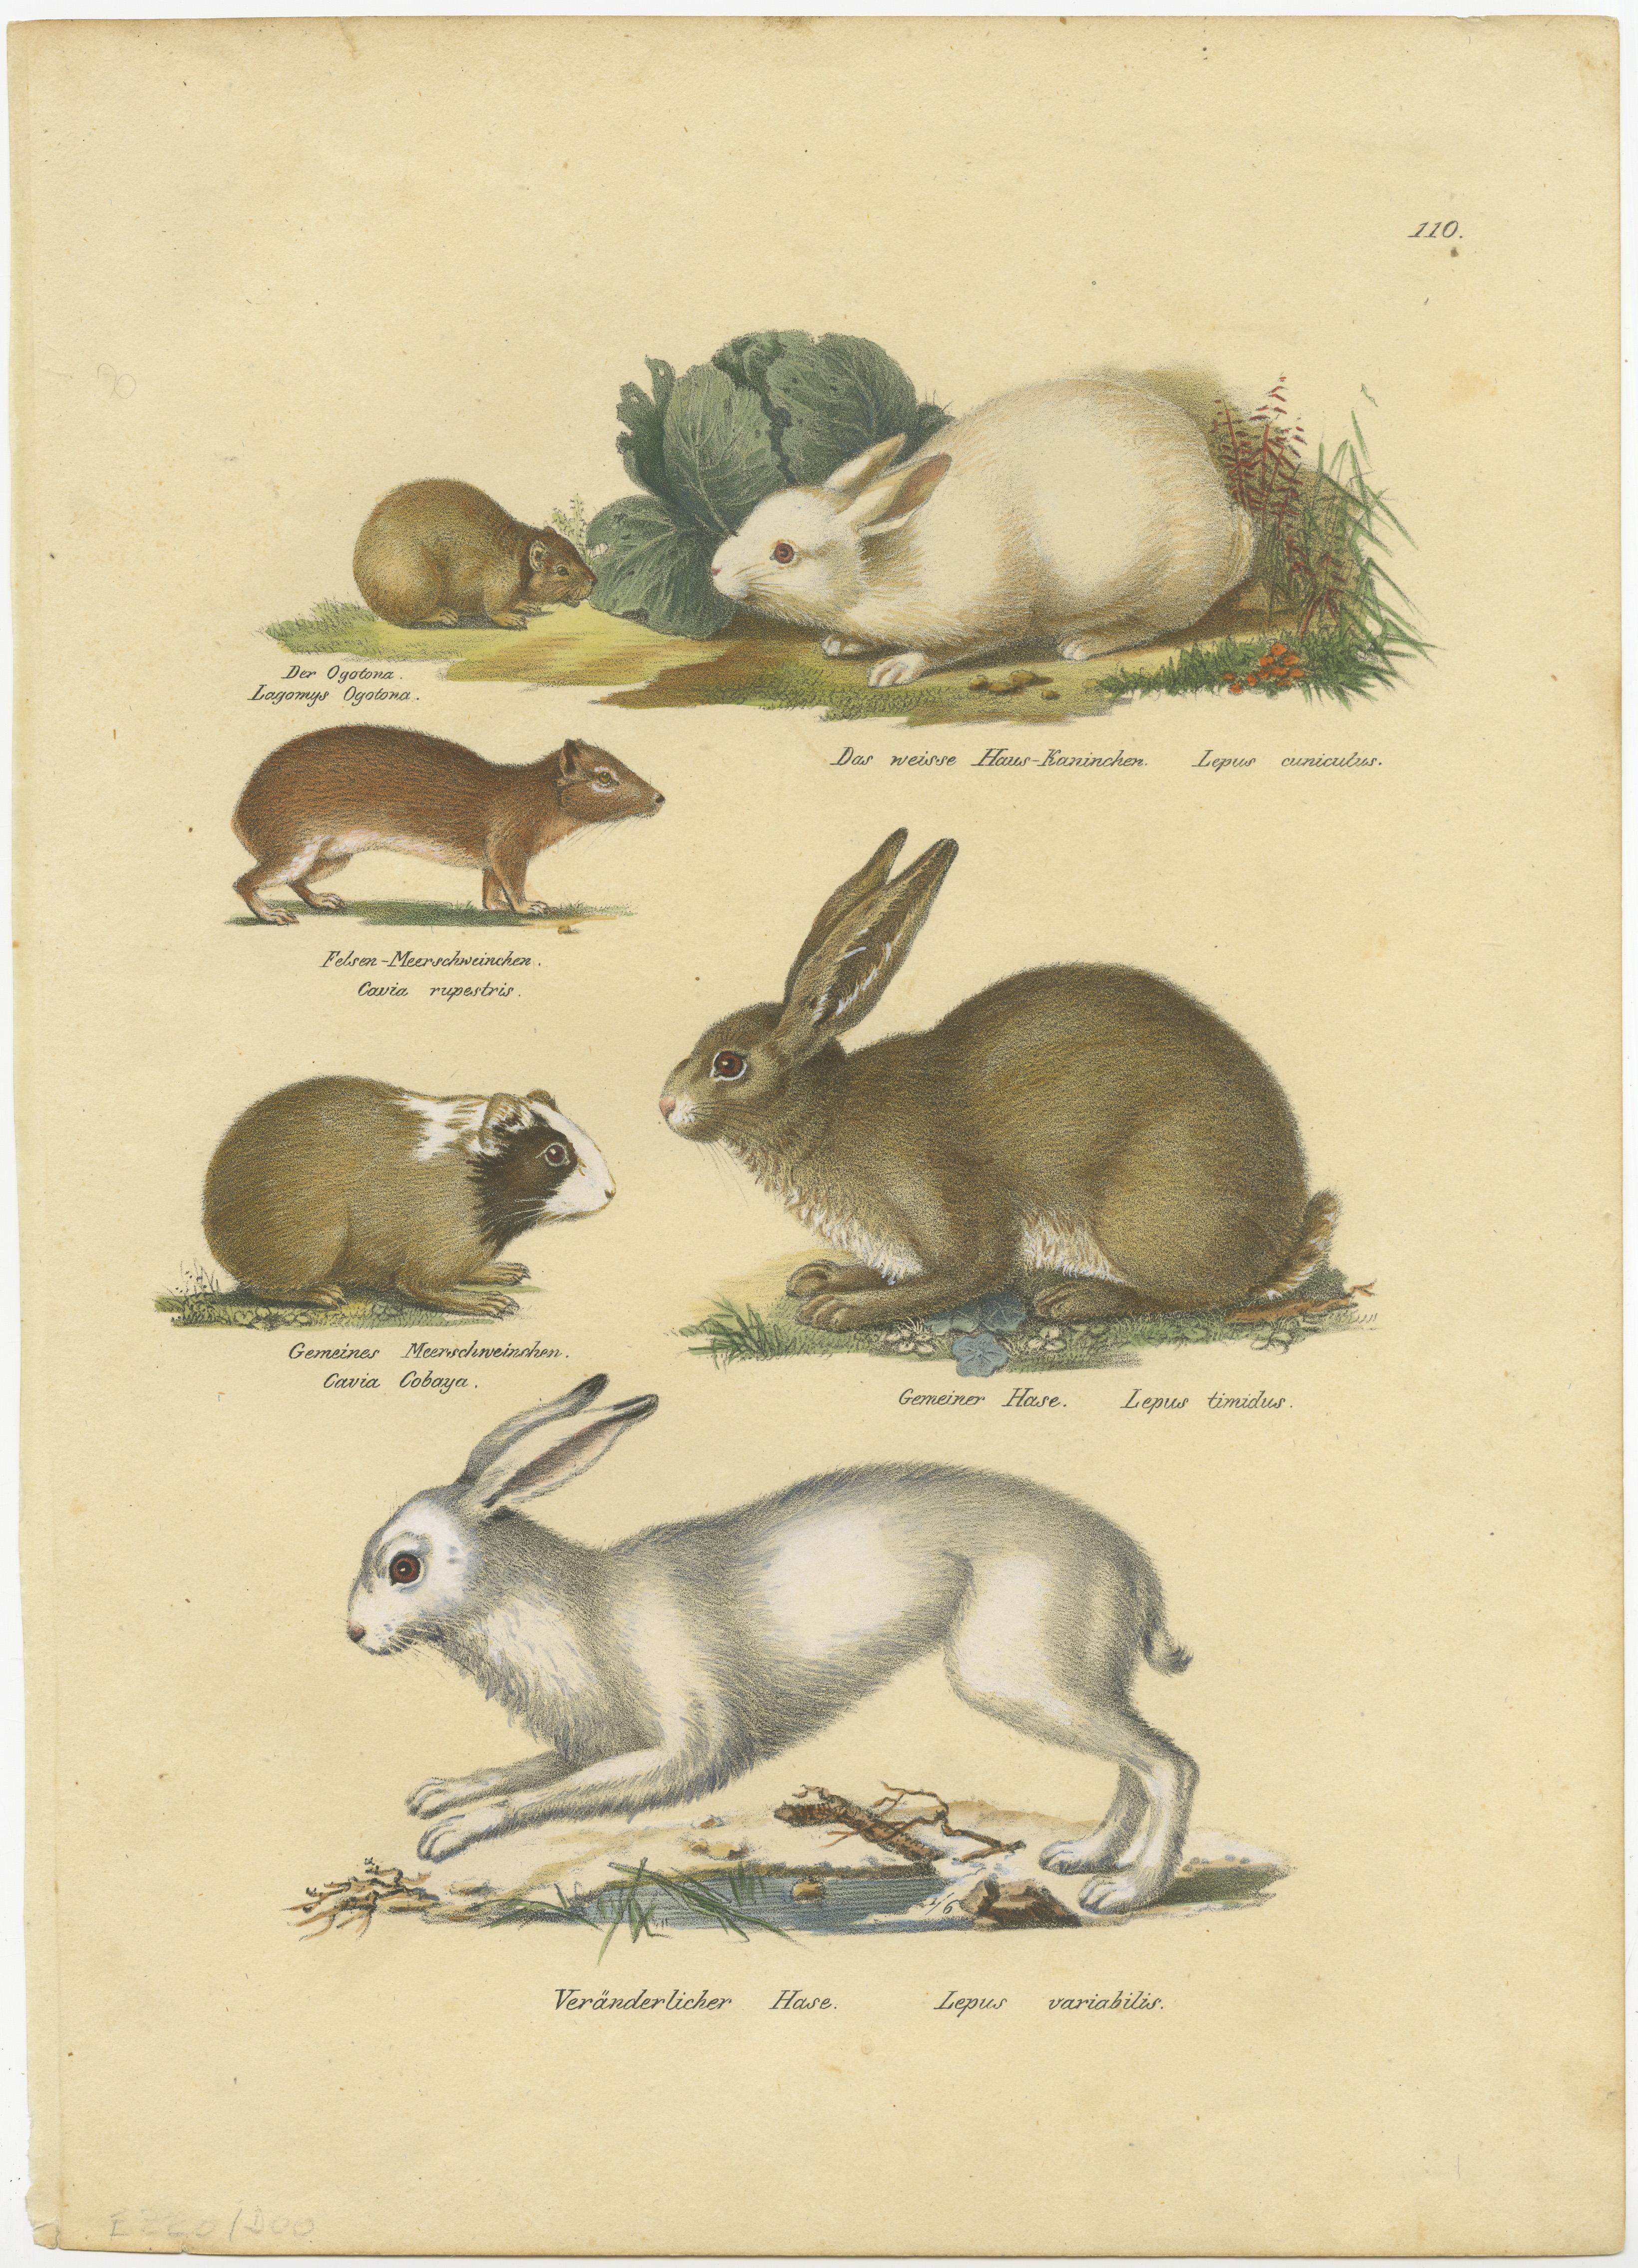 Antique print titled 'Der ogotona (..) - Gemeiner Hase (..) - Veränderlicher Hase (..)'. Original antique print of a rabbit, hares, pika and other rodents. This print originates from 'Naturhistorische Abbildungen der Saeugethiere' by Schinz.